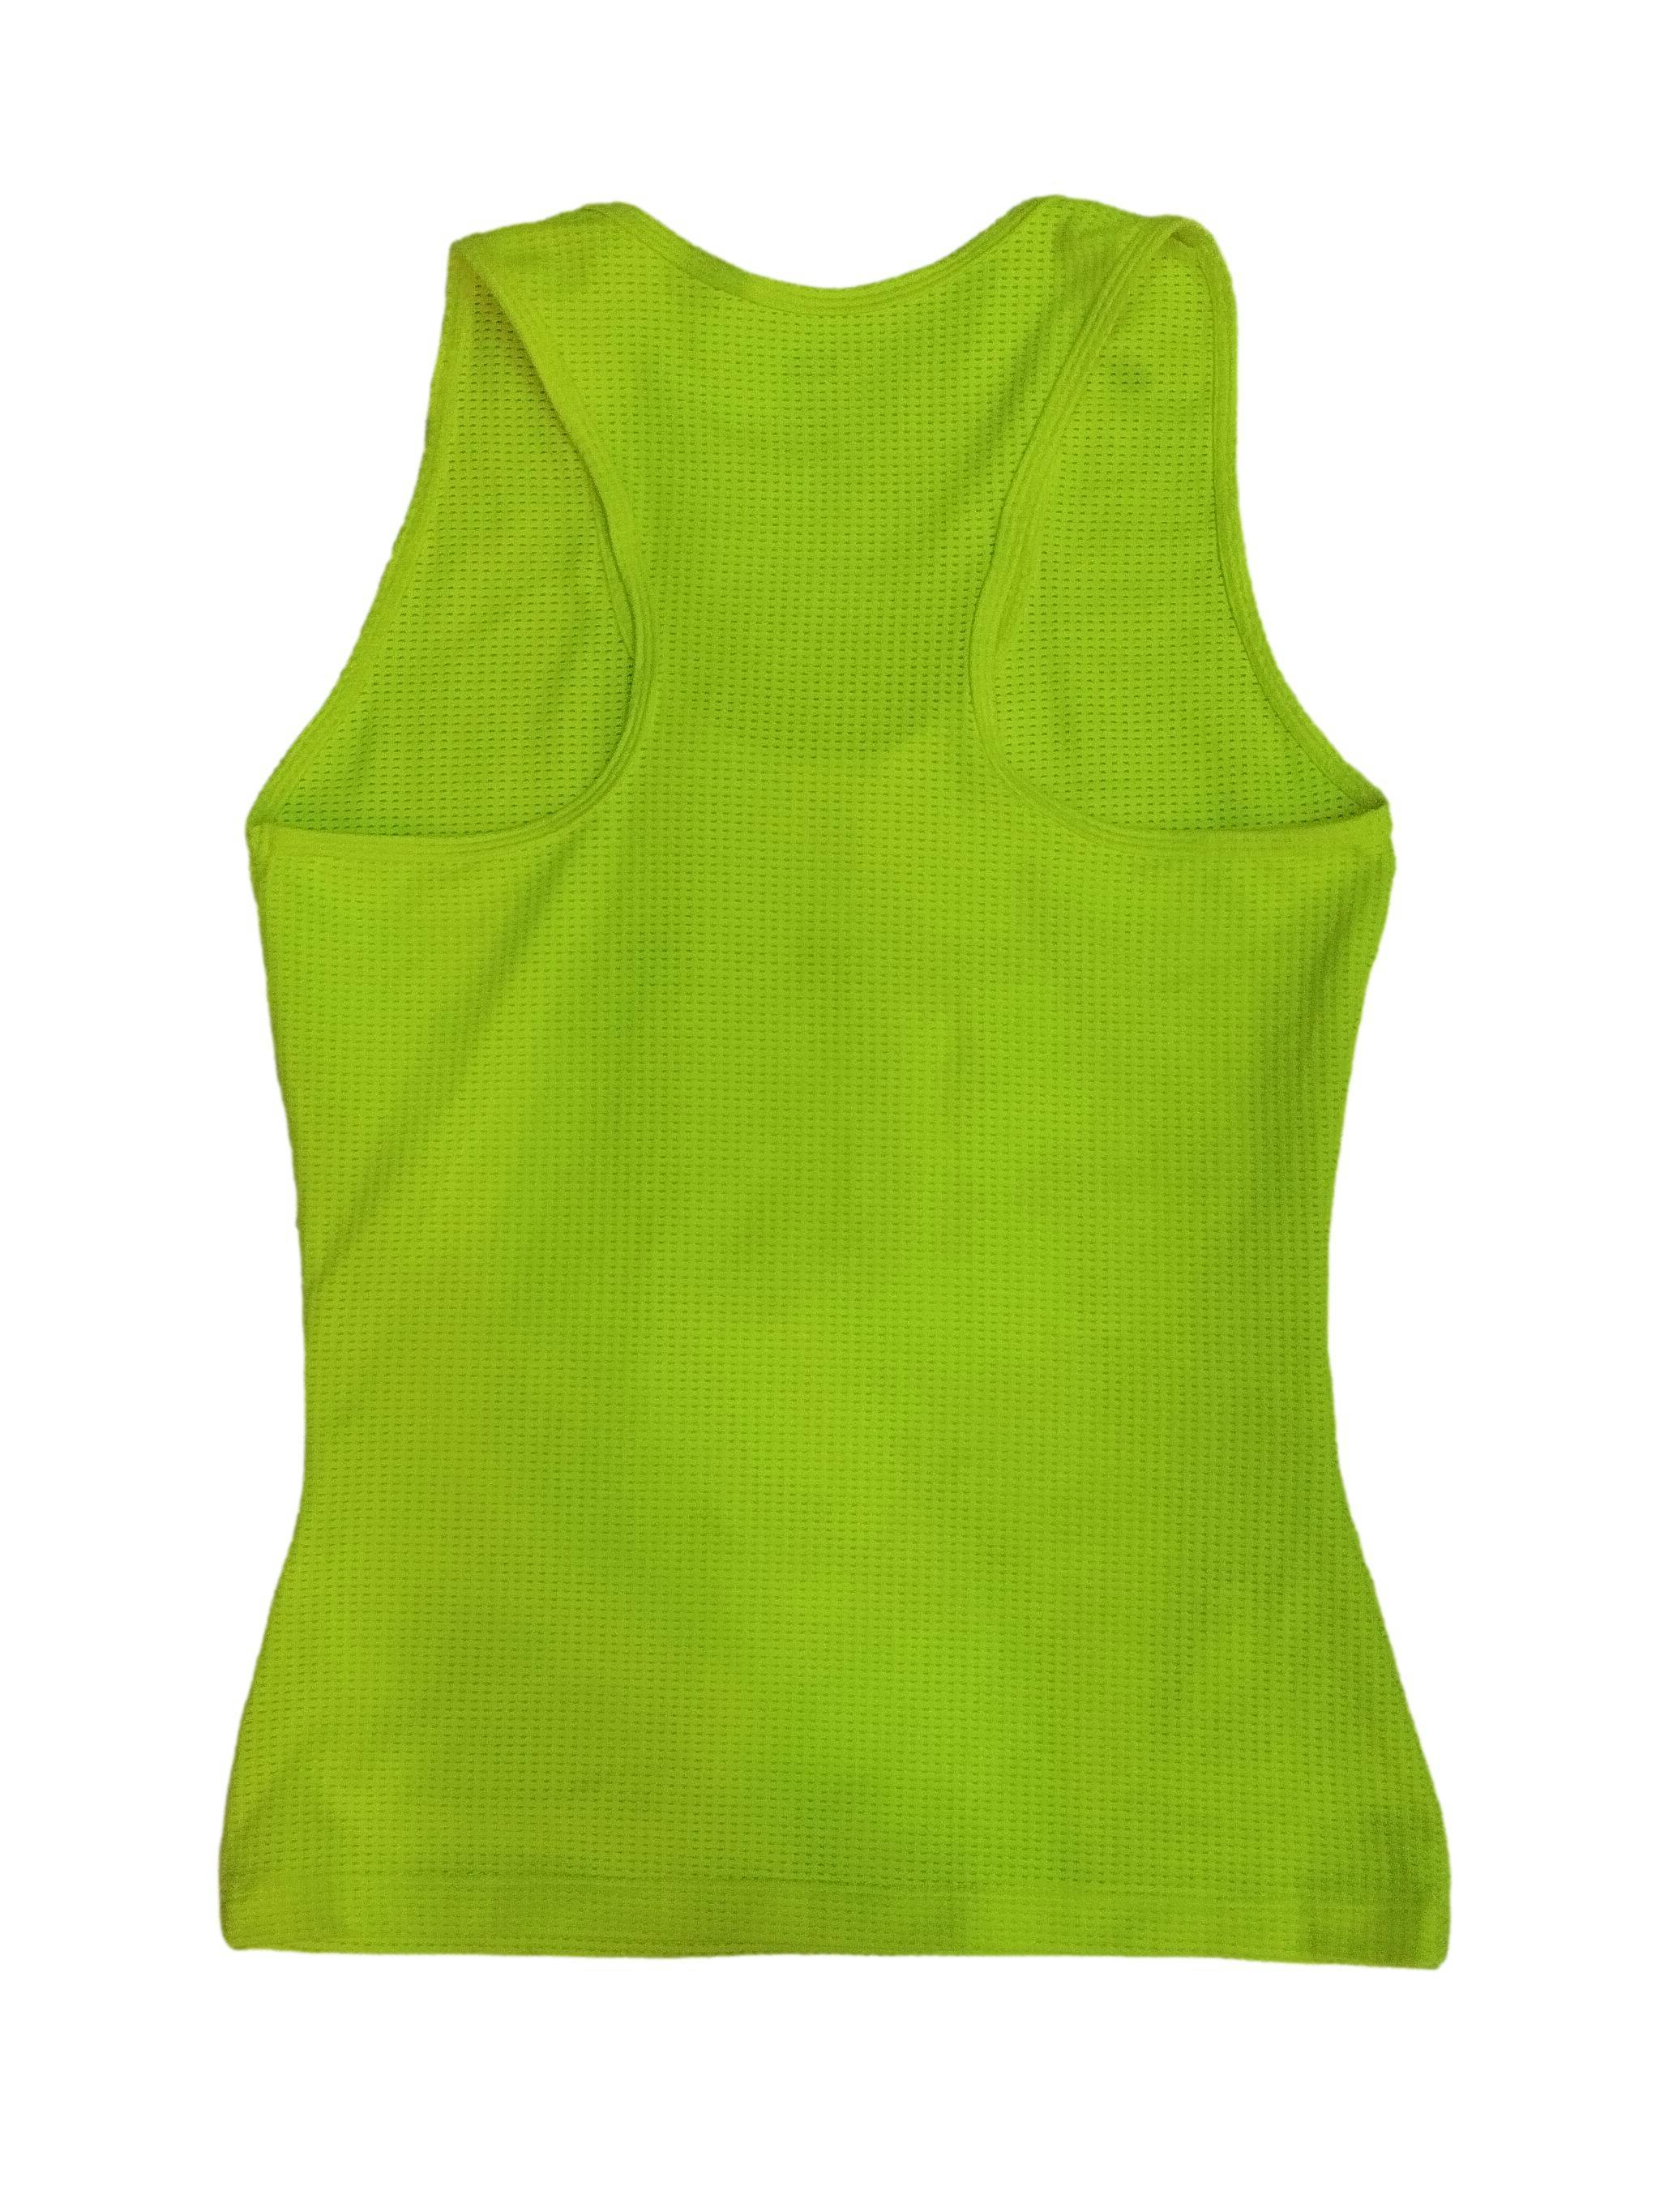 Polo deportivo verde neón espalda olímpica, textura de malla, estampado de letras, stretch. Busto: 72 cm (sin estirar), Largo: 55 cm